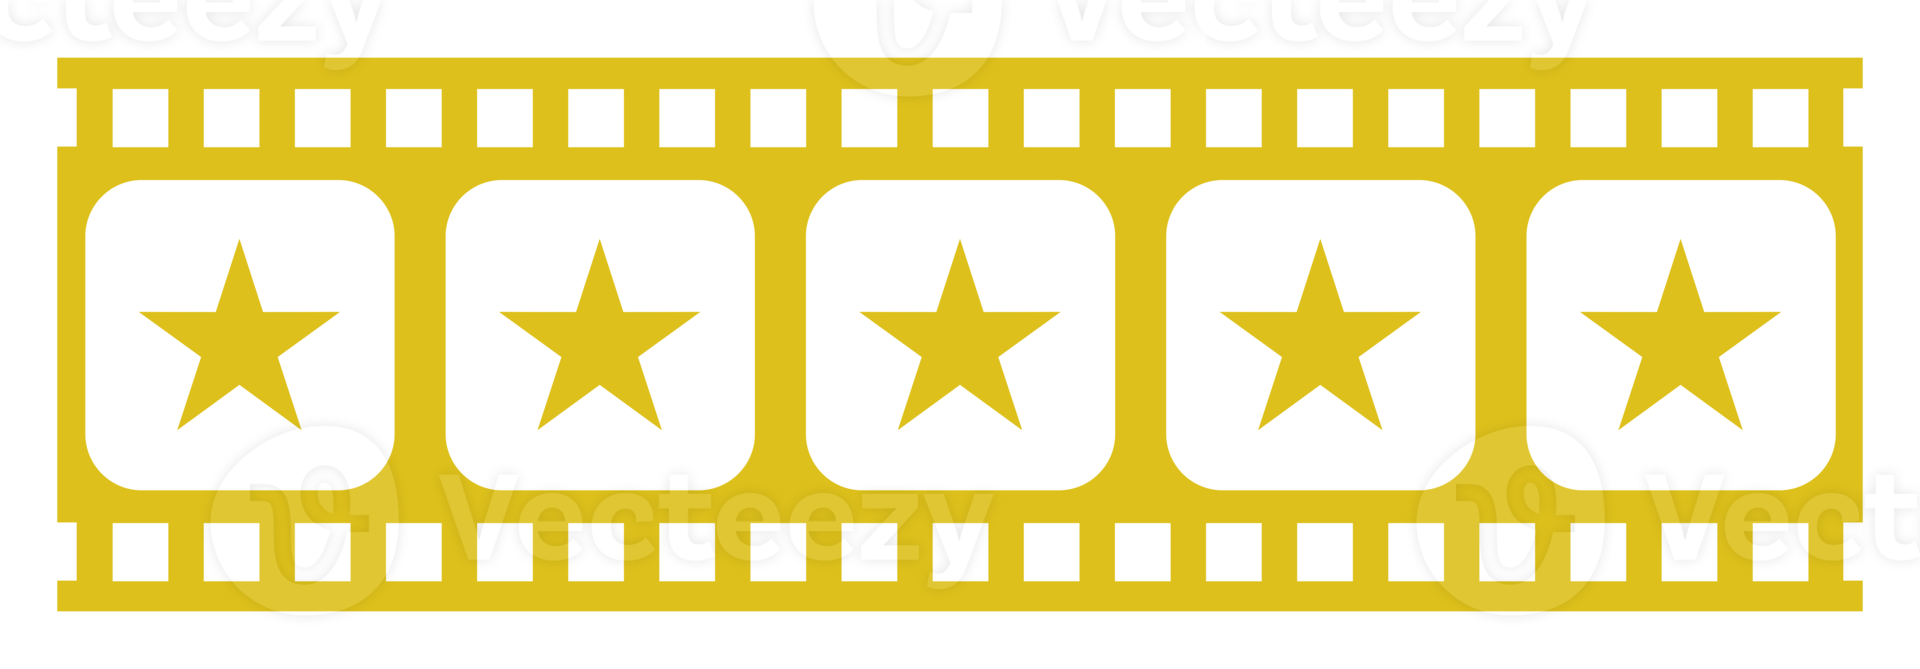 Bild der fünf 5-Sterne-Zeichen in der Filmstreifen-Silhouette. Sternbewertungssymbol für Film- oder Filmkritik, Piktogramm, Apps, Website oder Grafikdesignelement. Bewertung 5 Sterne. PNG-Format png